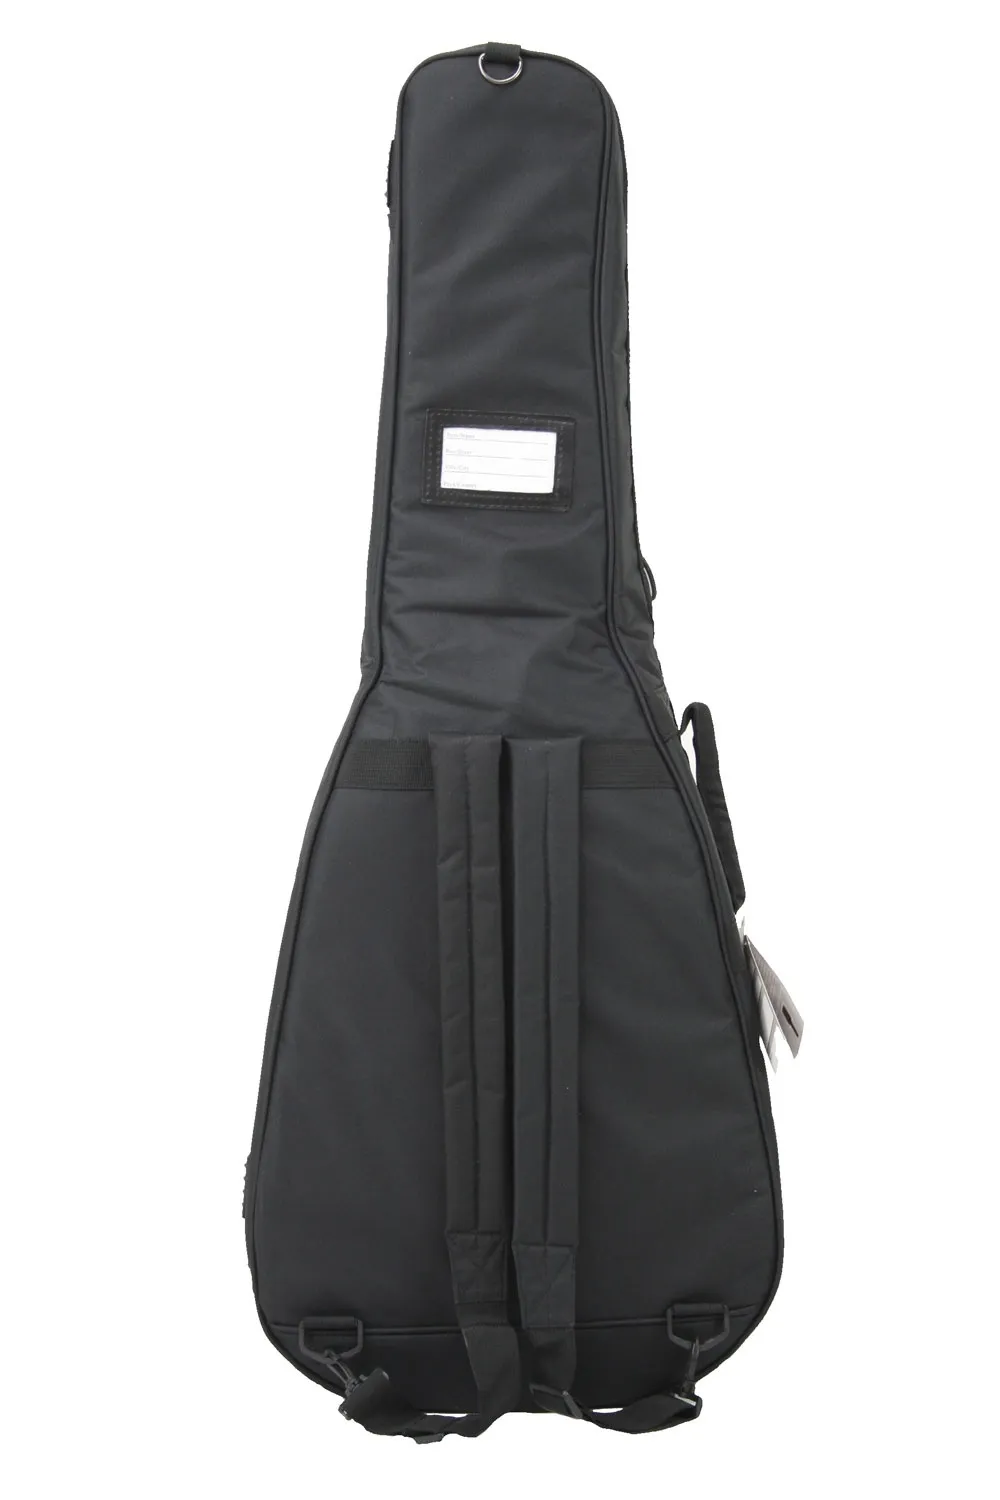 LENZ gepolsterte Gitarretasche für 4/4 Konzertgitarre in schwarz, rueckansicht